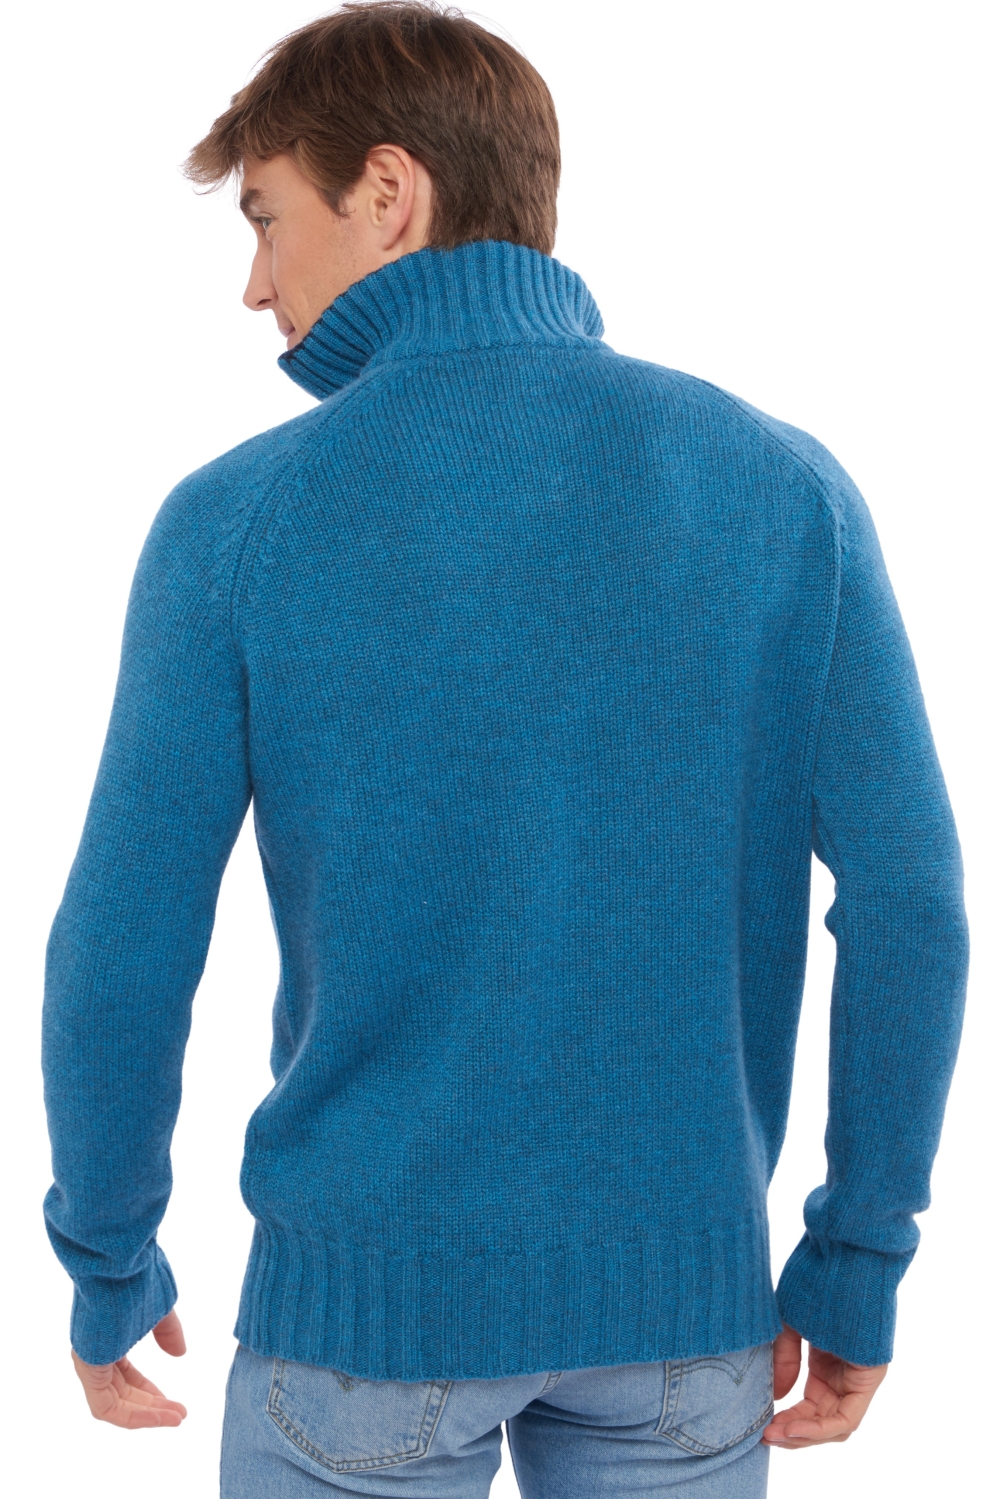 Cashmere kaschmir pullover herren olivier manor blue nachtblau 4xl